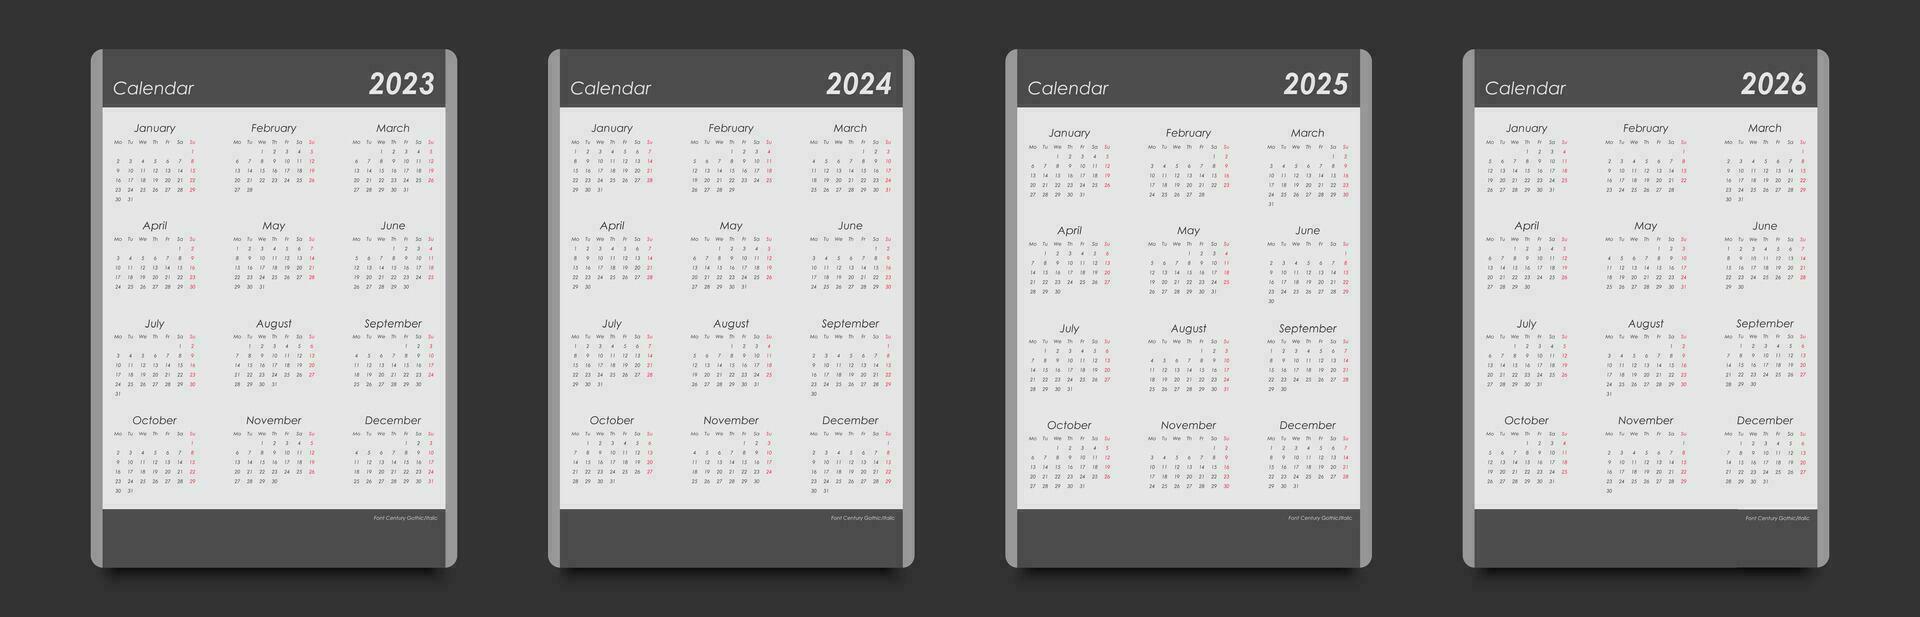 calendario conjunto para 2023, 2024, 2025, 2026. vertical, negro y blanco, semana empieza en lunes. vector